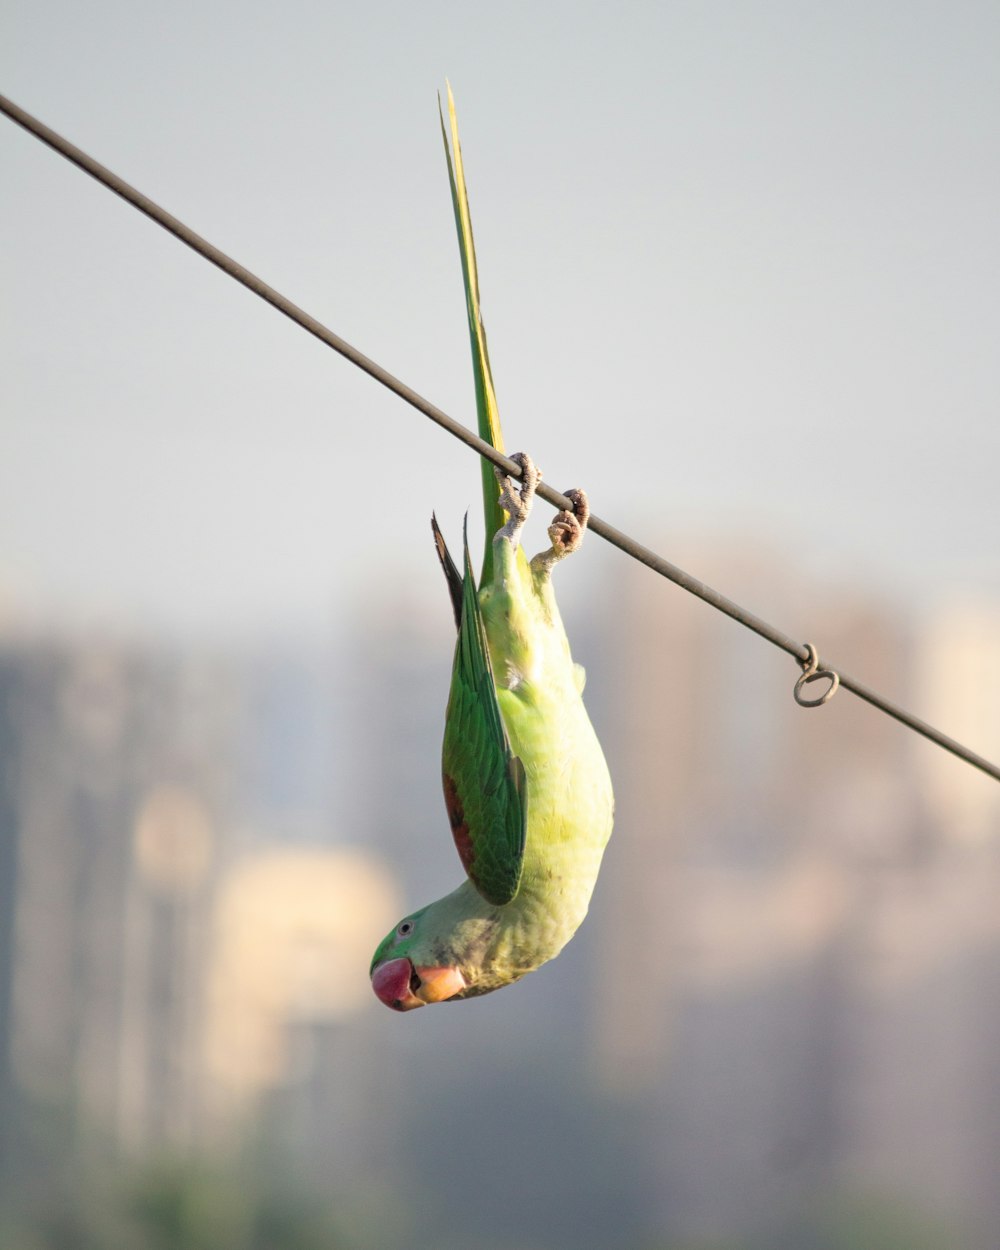 Ein grüner Vogel hängt kopfüber an einem Draht